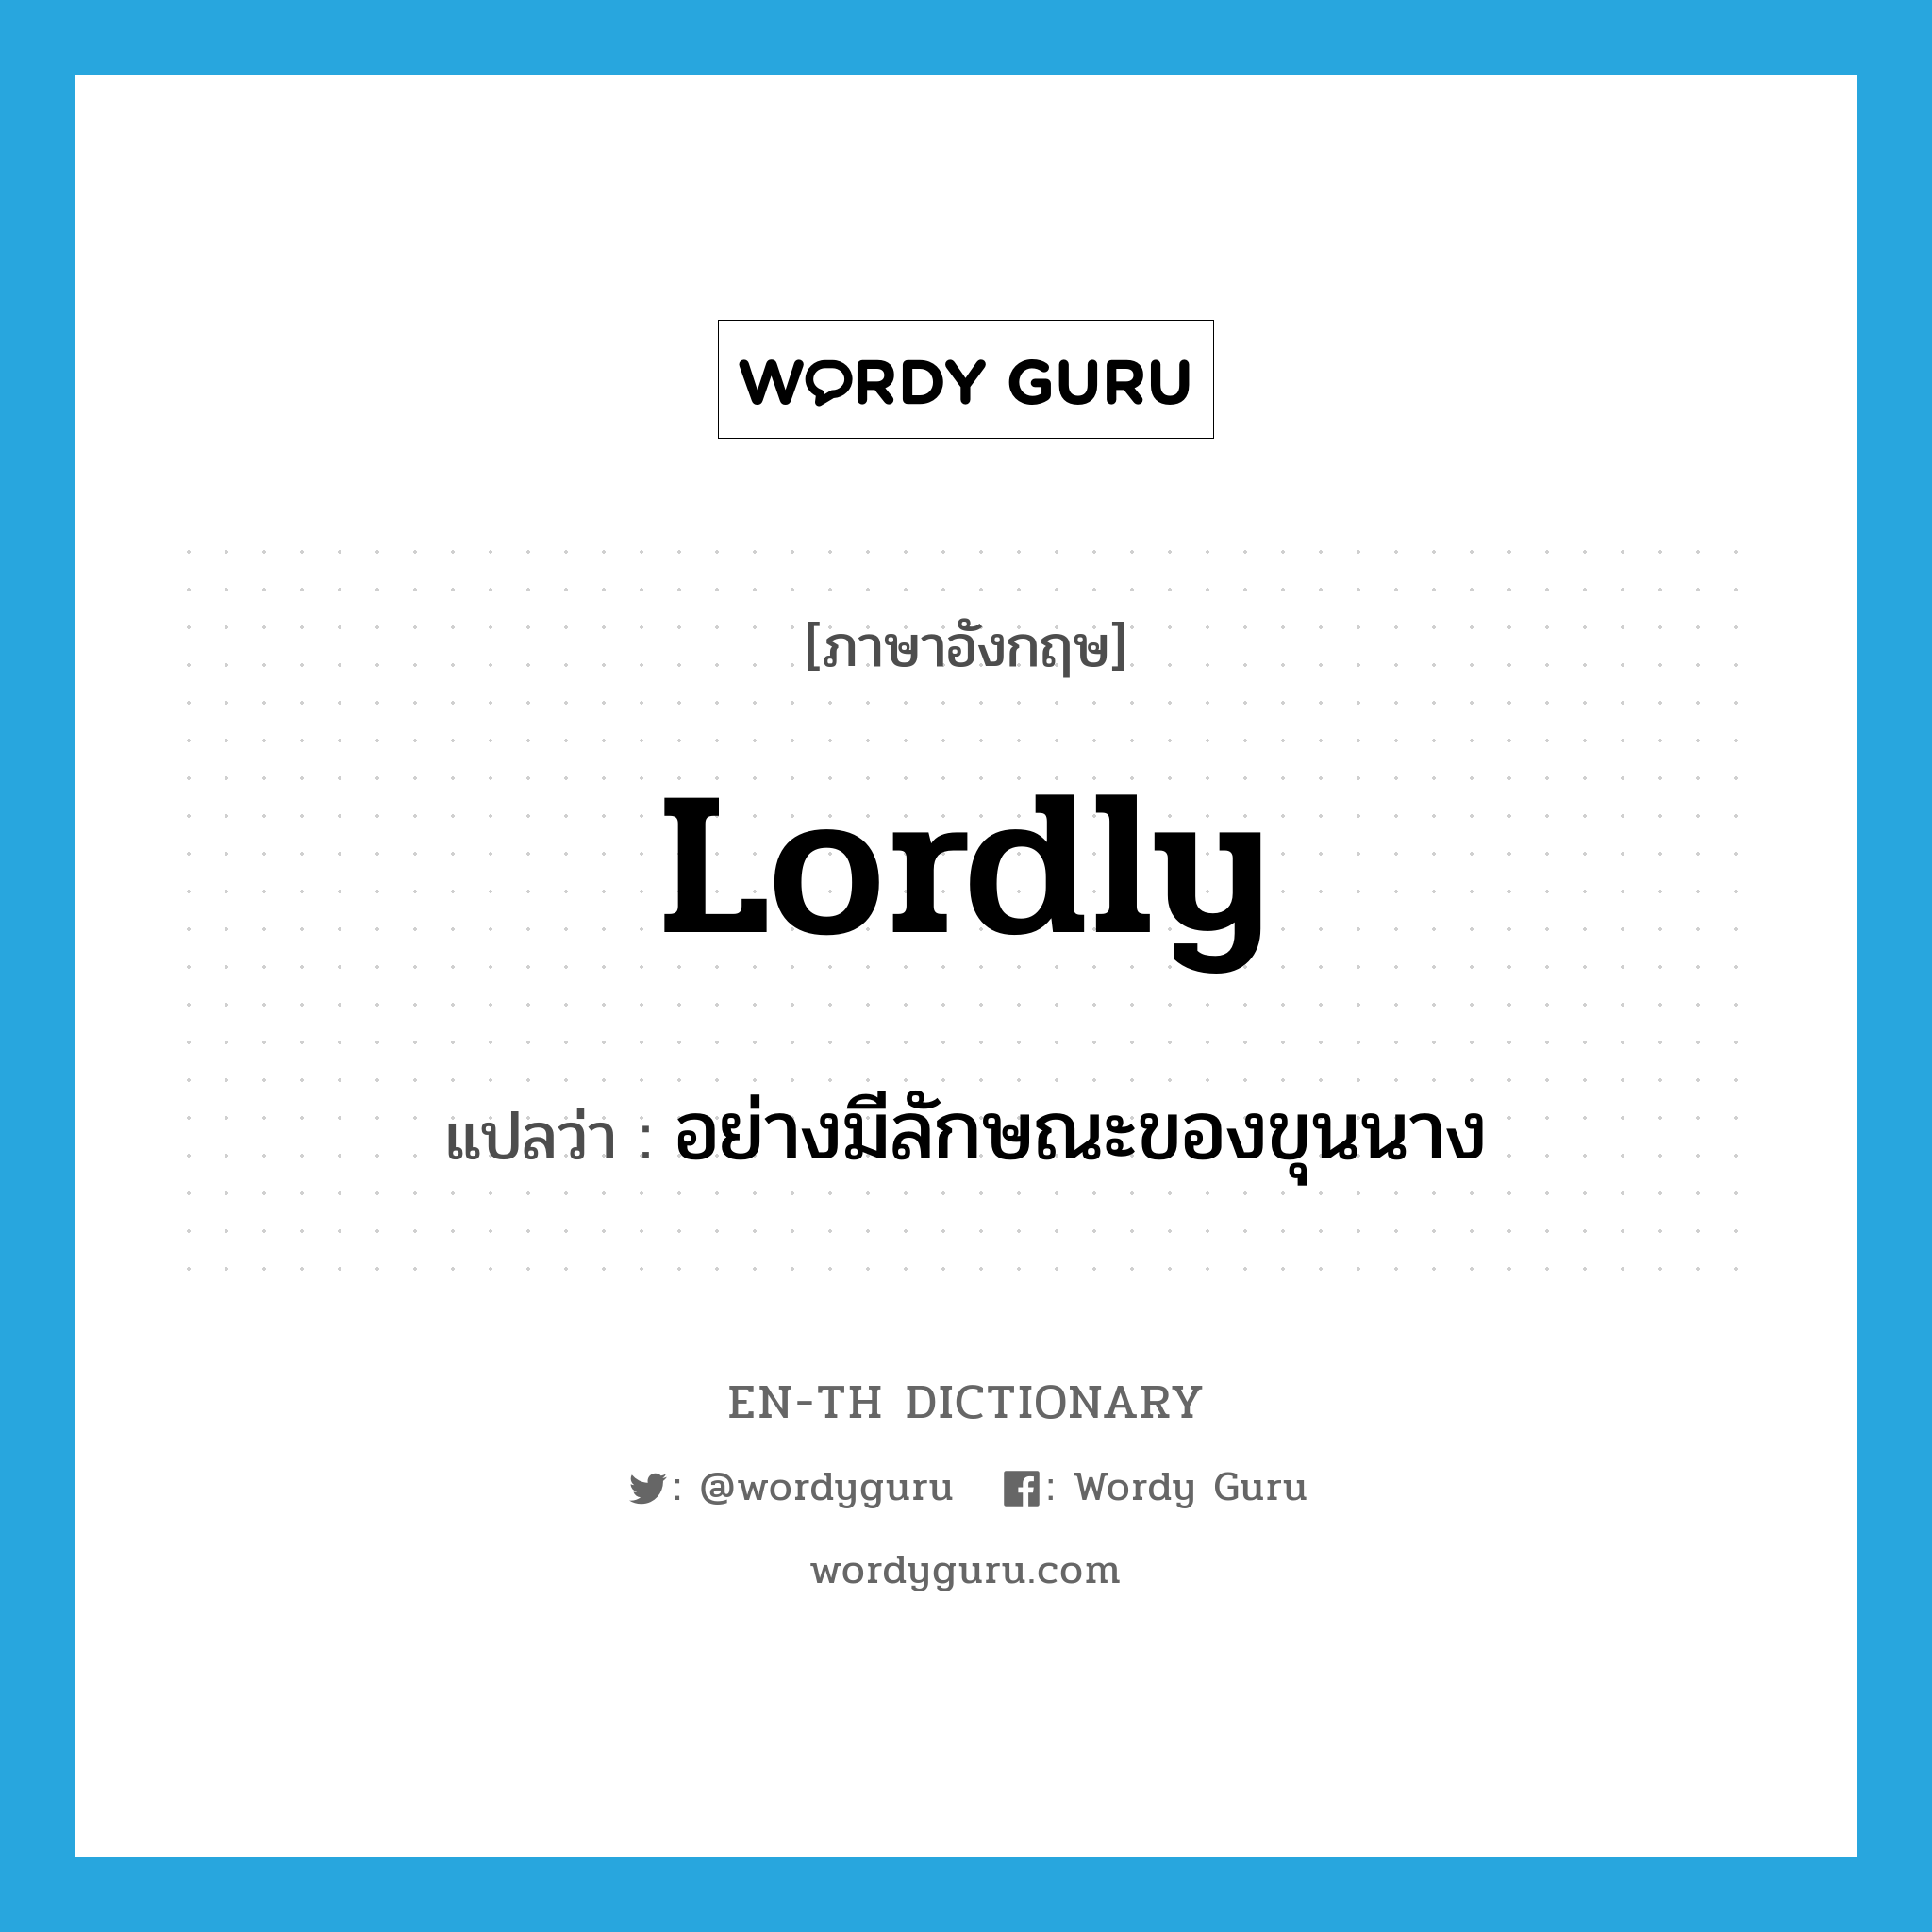 lordly แปลว่า?, คำศัพท์ภาษาอังกฤษ lordly แปลว่า อย่างมีลักษณะของขุนนาง ประเภท ADV หมวด ADV